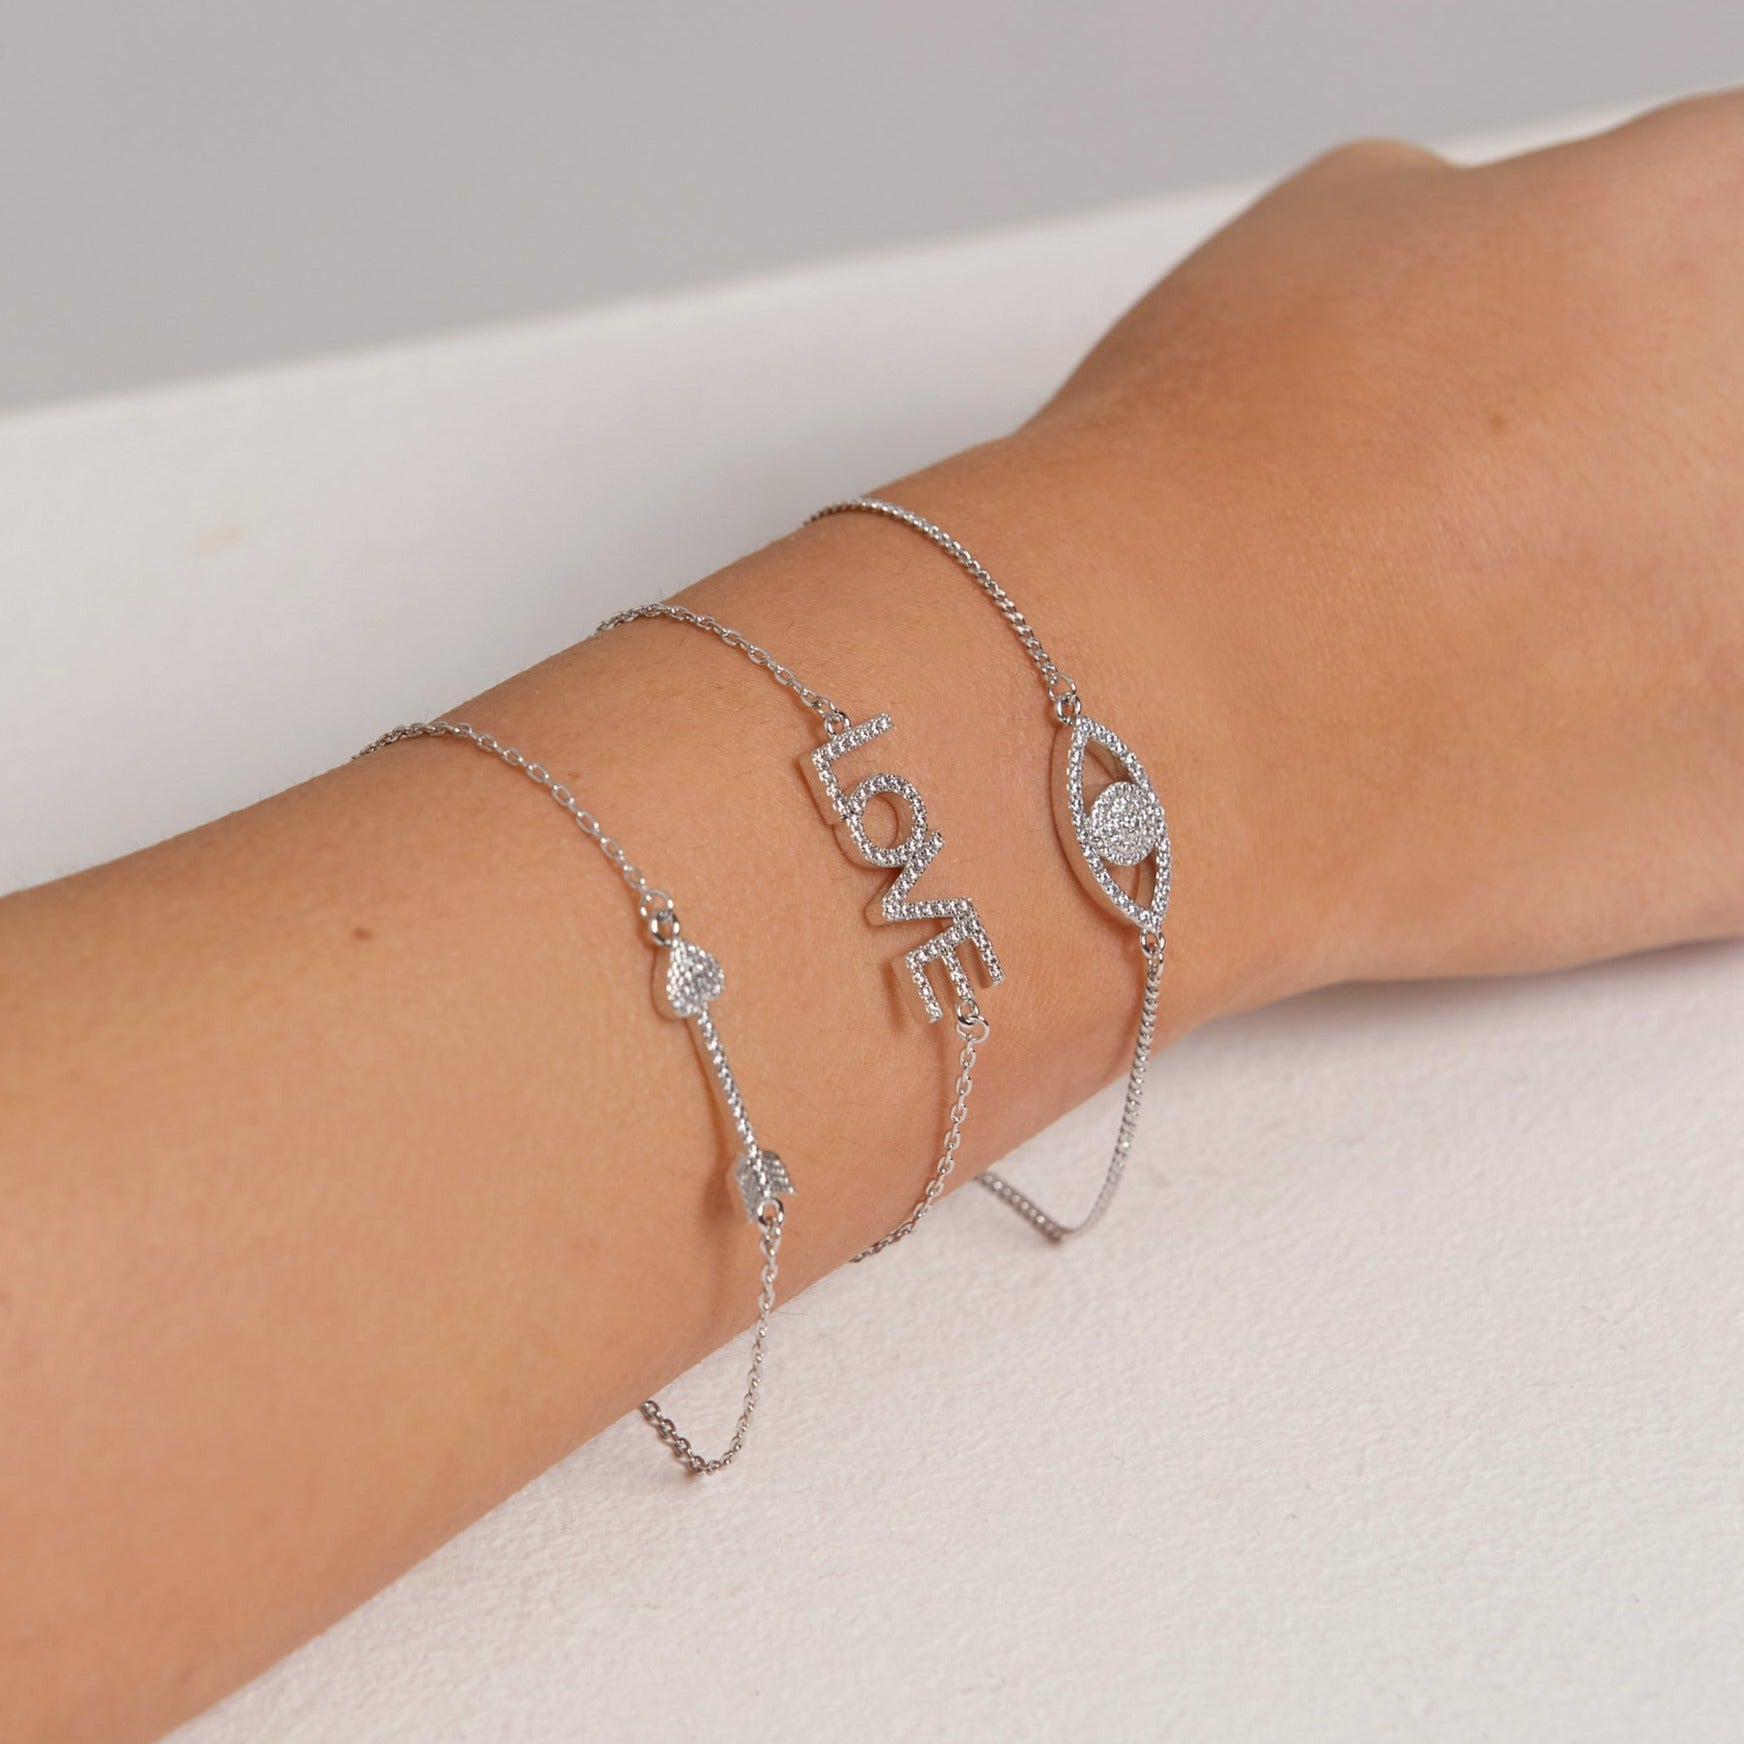 Love Bracelet (Silver)